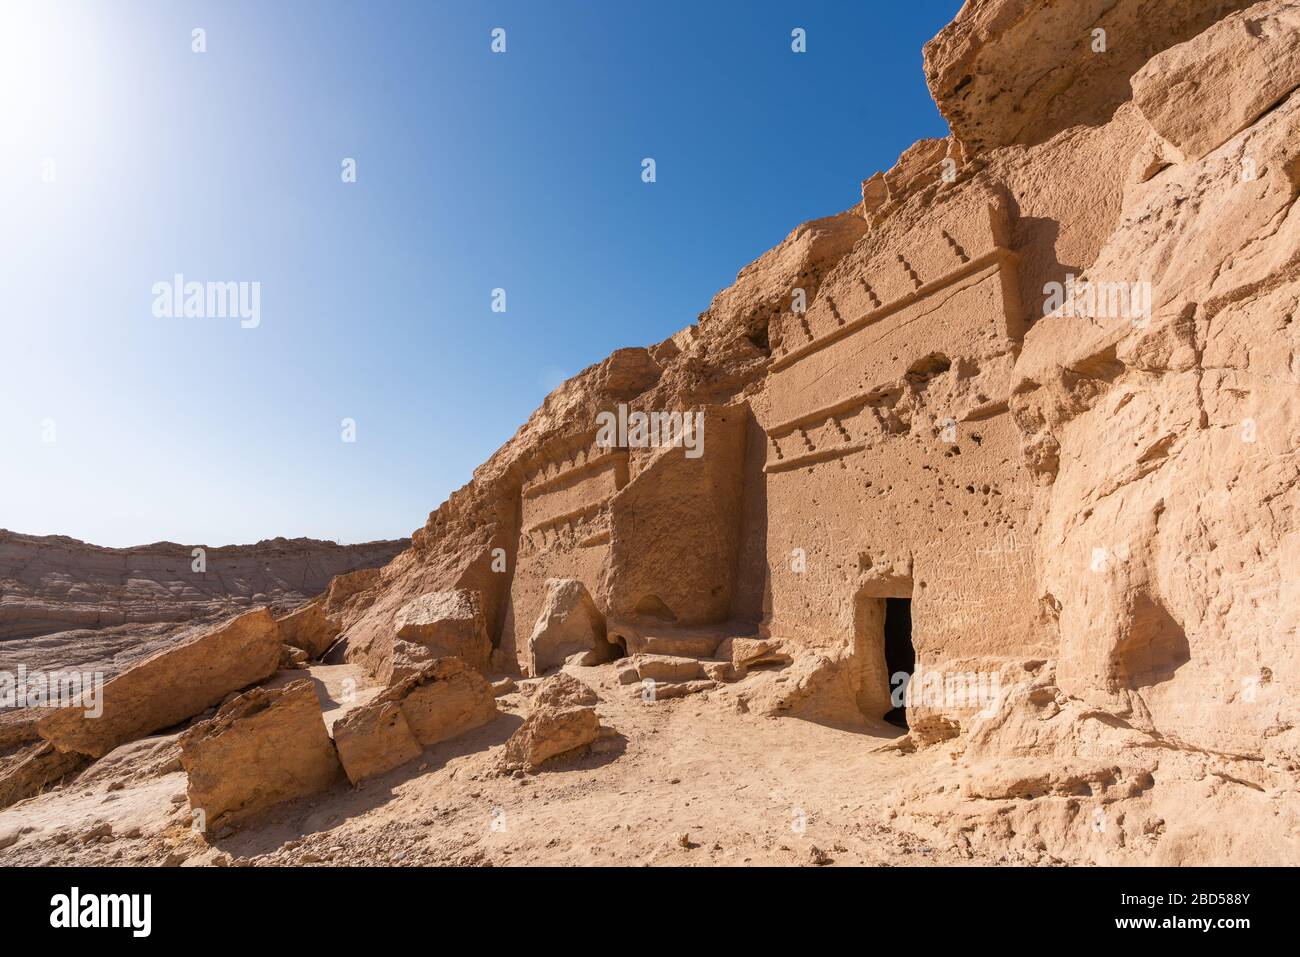 Historic Nabatean tombs in Al Bad', Saudi Arabia Stock Photo